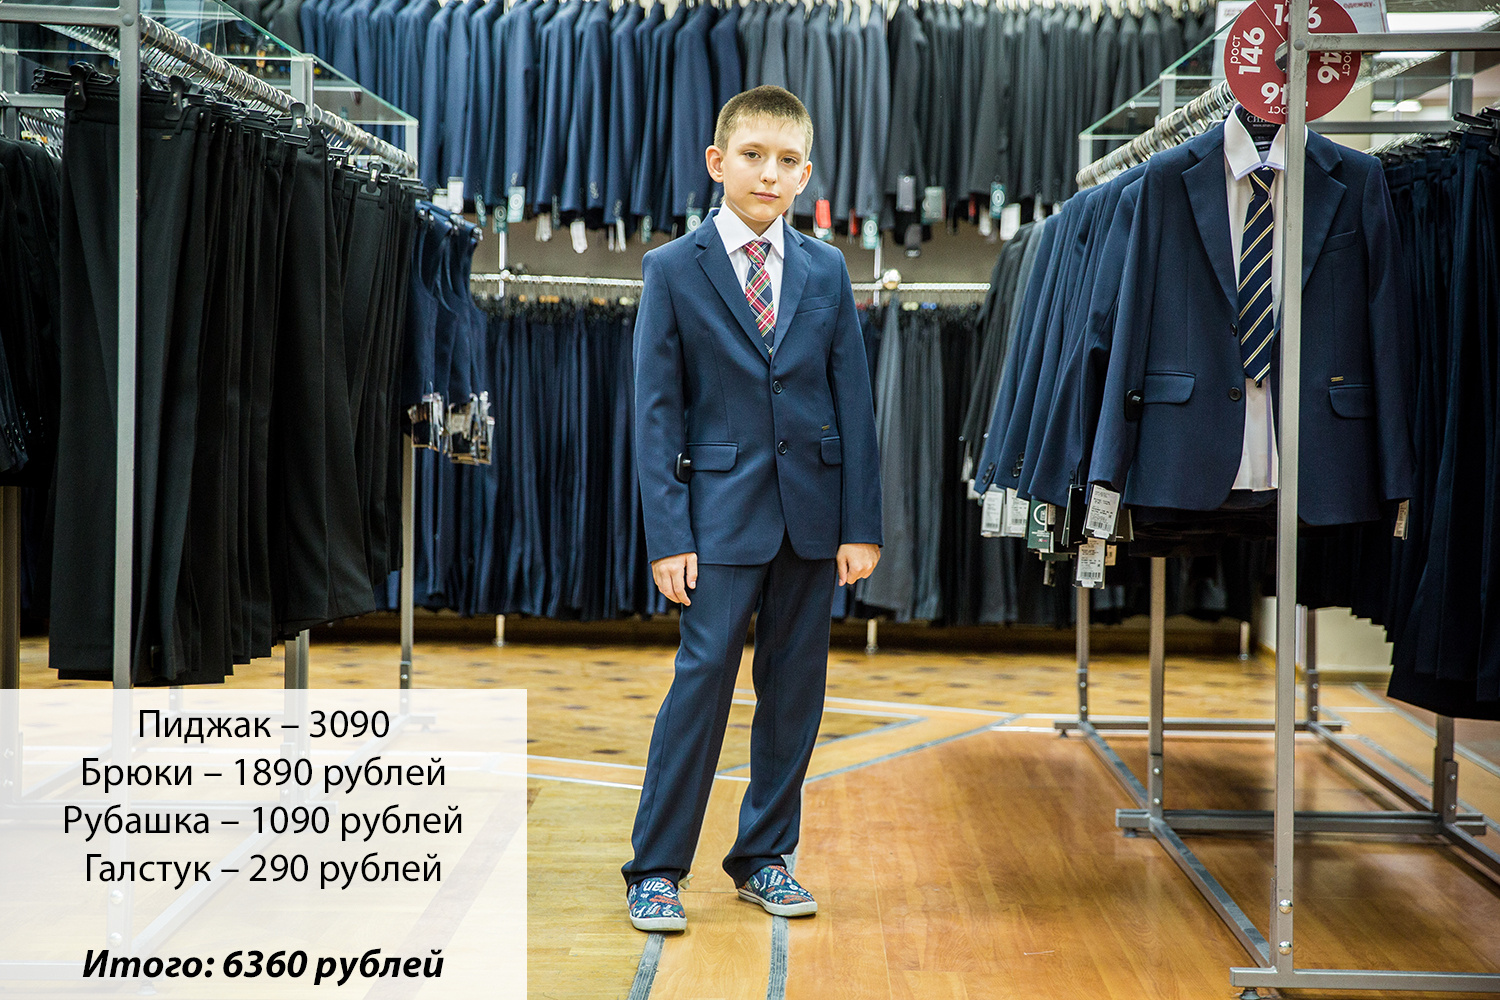 Магазин «Синар». Комплект стоит больше 6 тысяч рублей. По мнению мамы Евгения, на повседневную носку покупать одежду из таких дорогих материалов для младших школьников нецелесообразно 